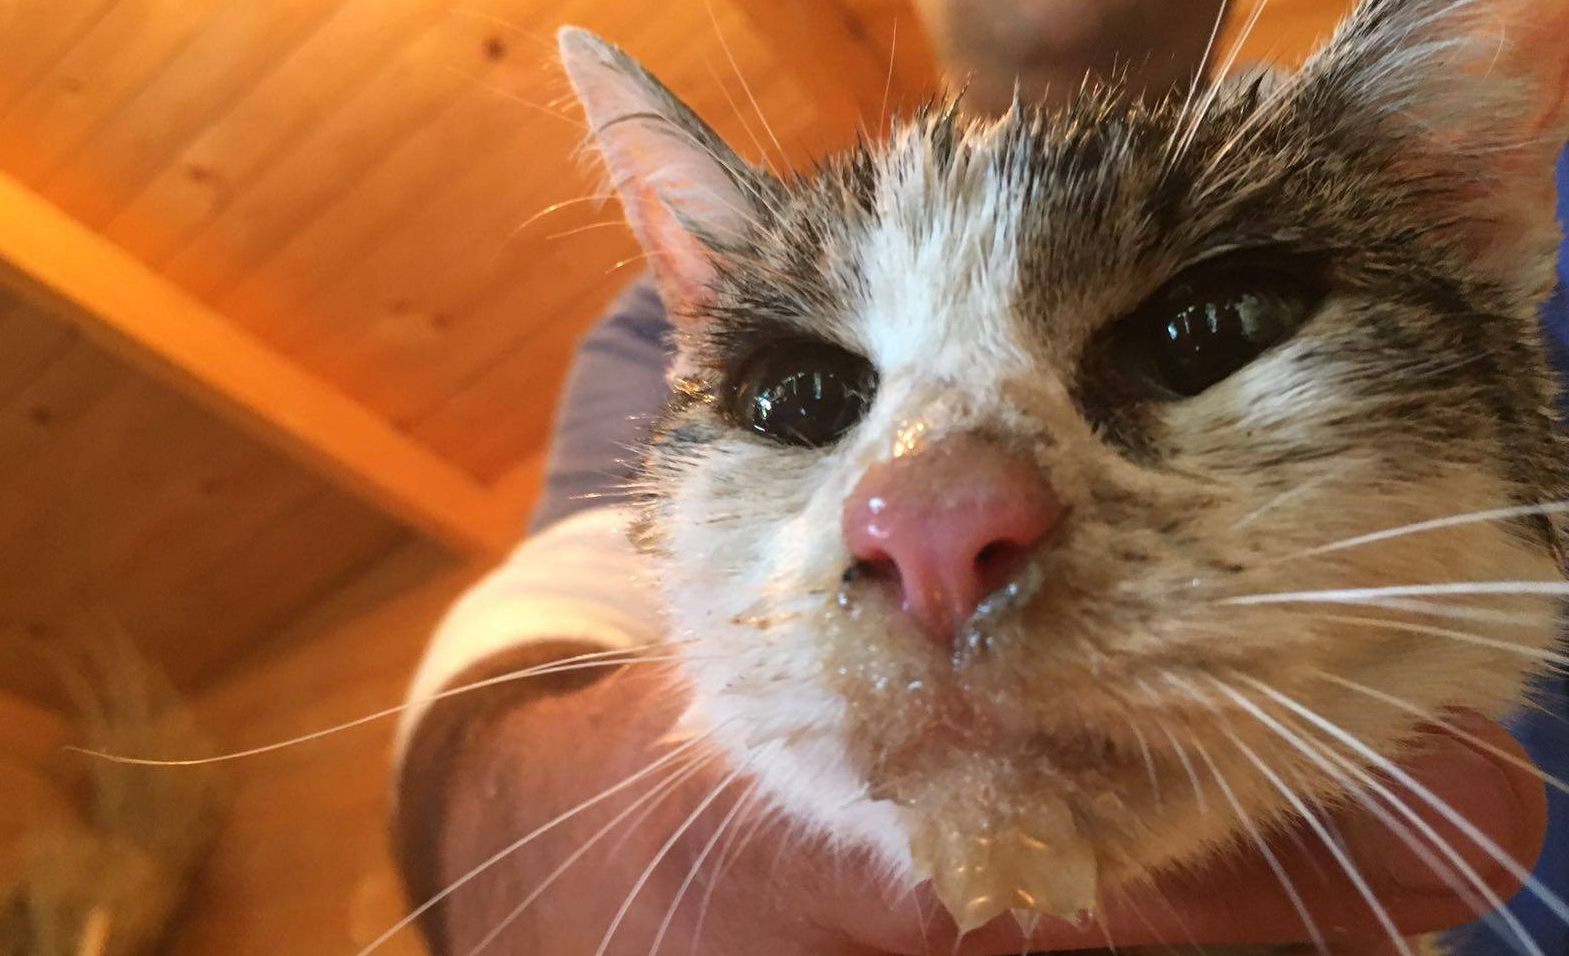 Gioia: a gata resgatada dos escombros 5 dias depois do sismo